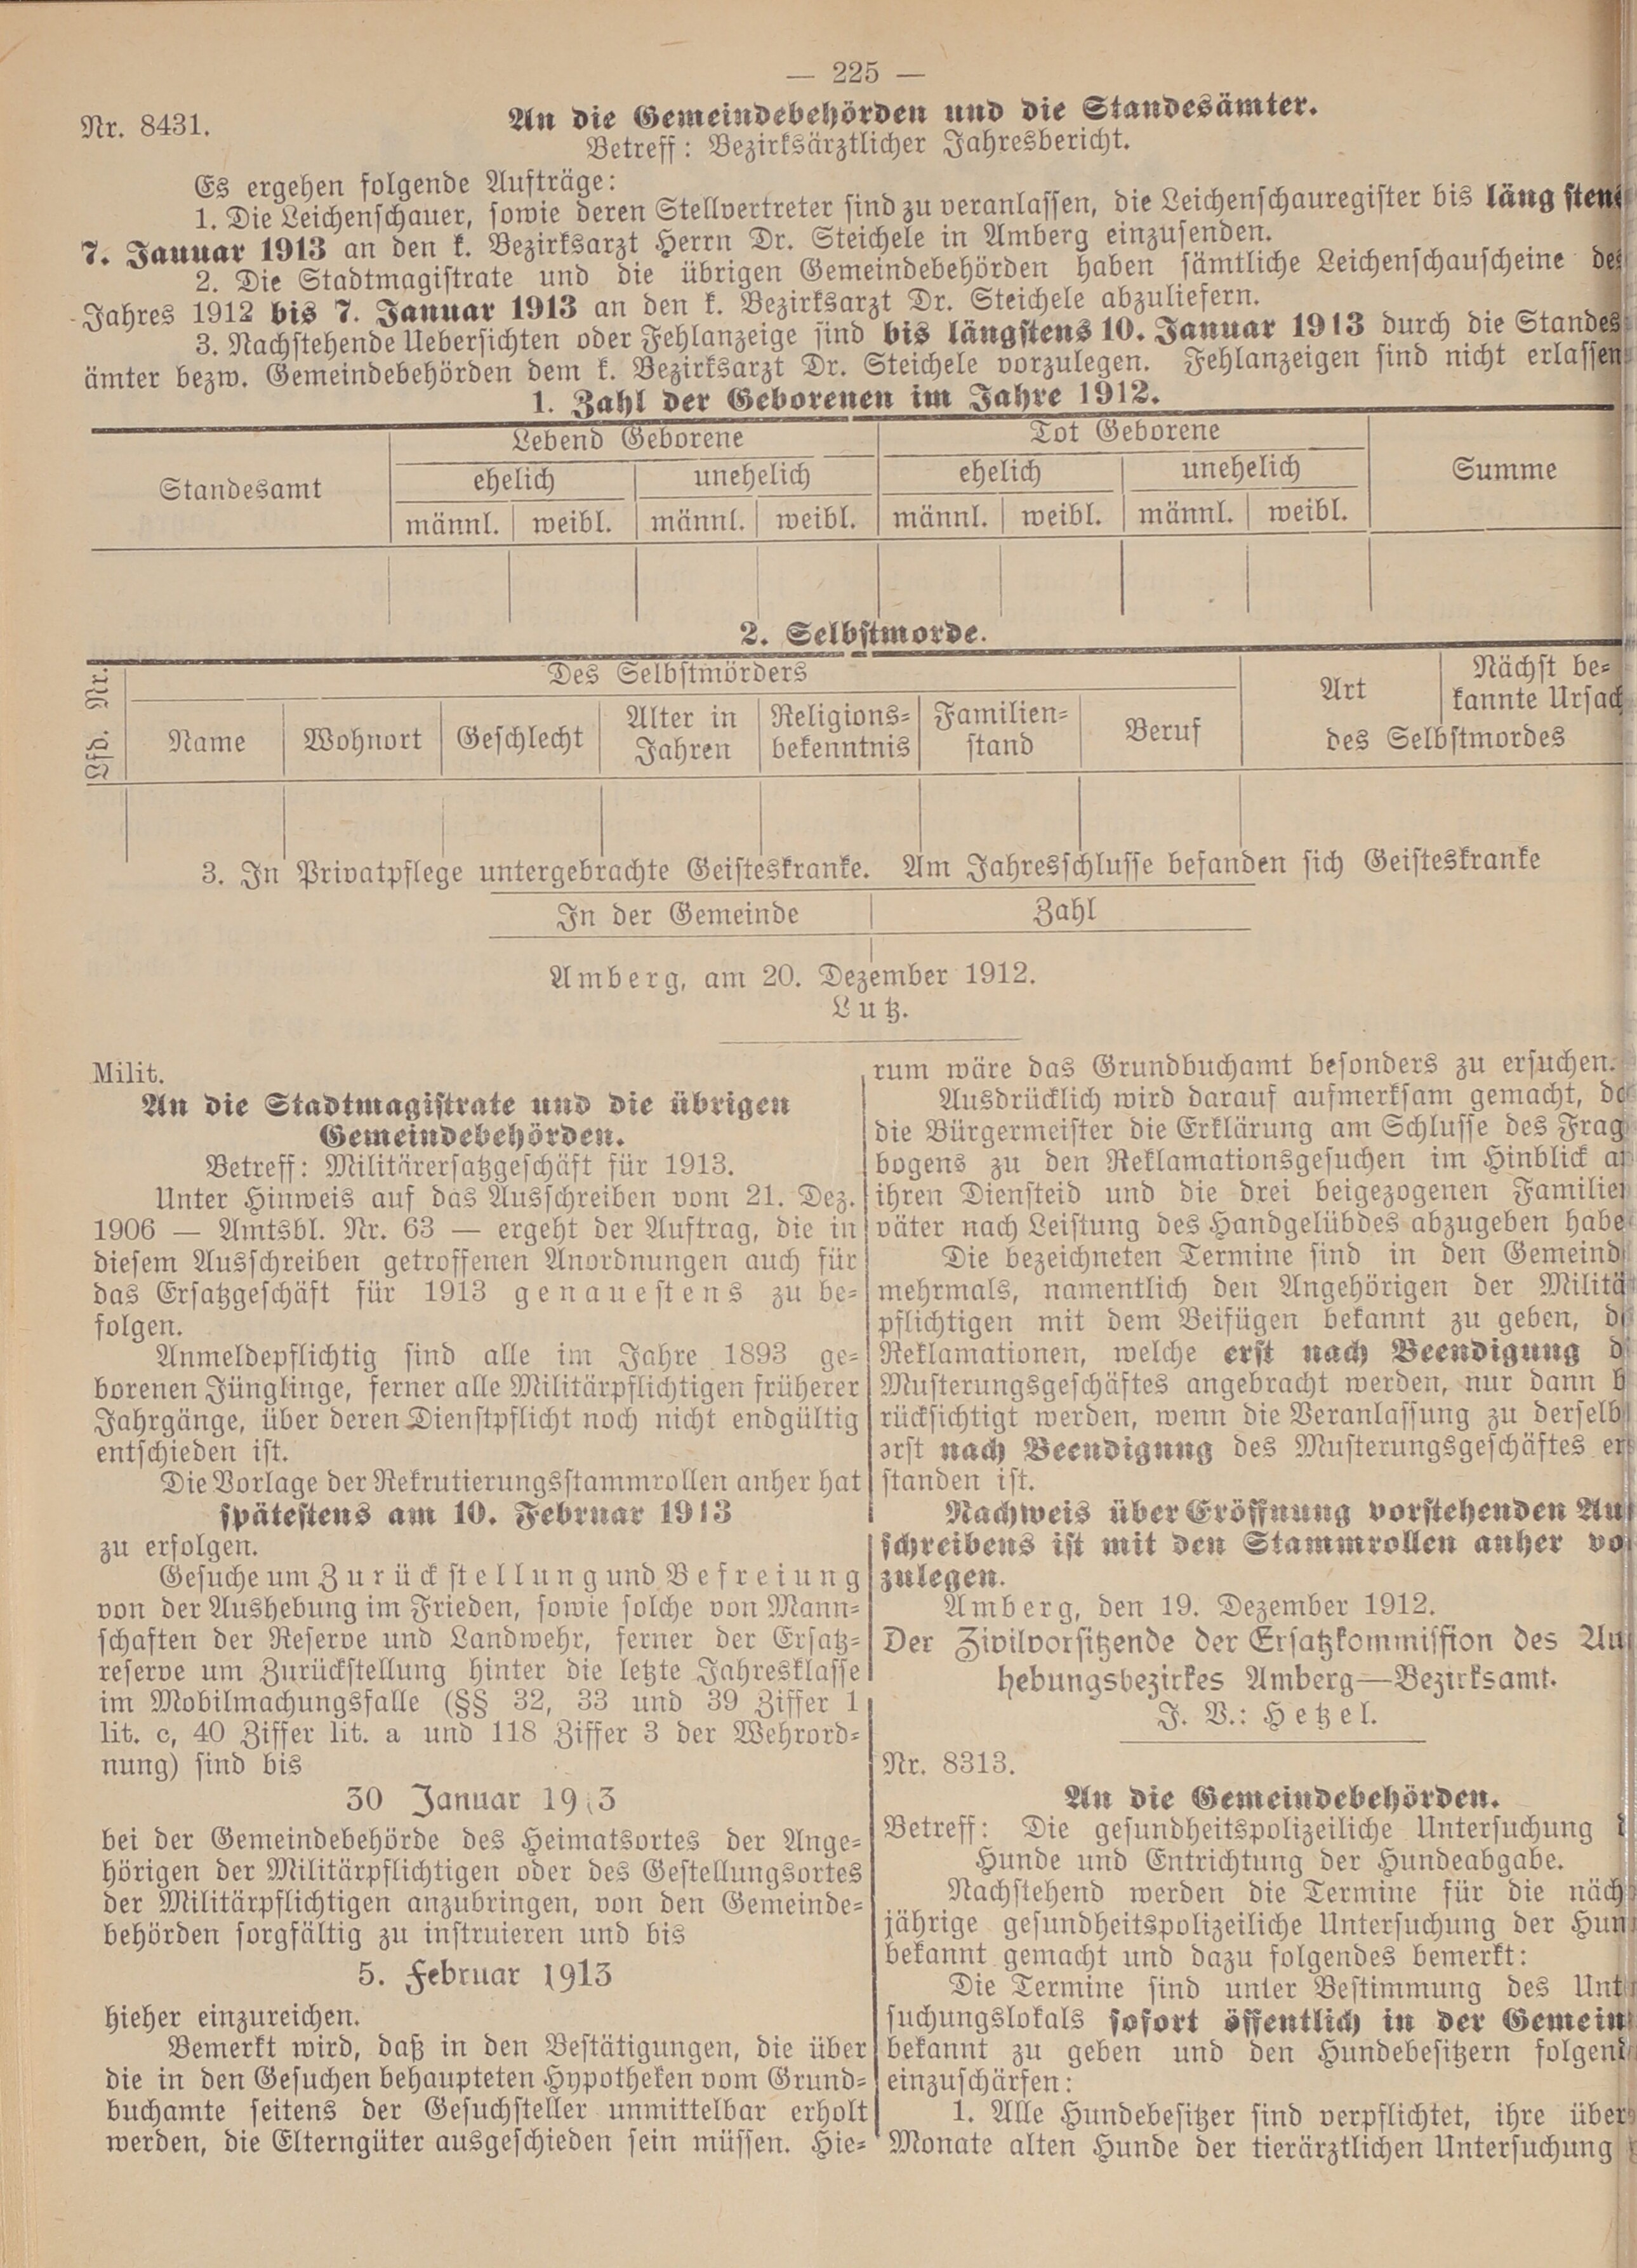 2. amtsblatt-amberg-1912-12-21-n59_4940